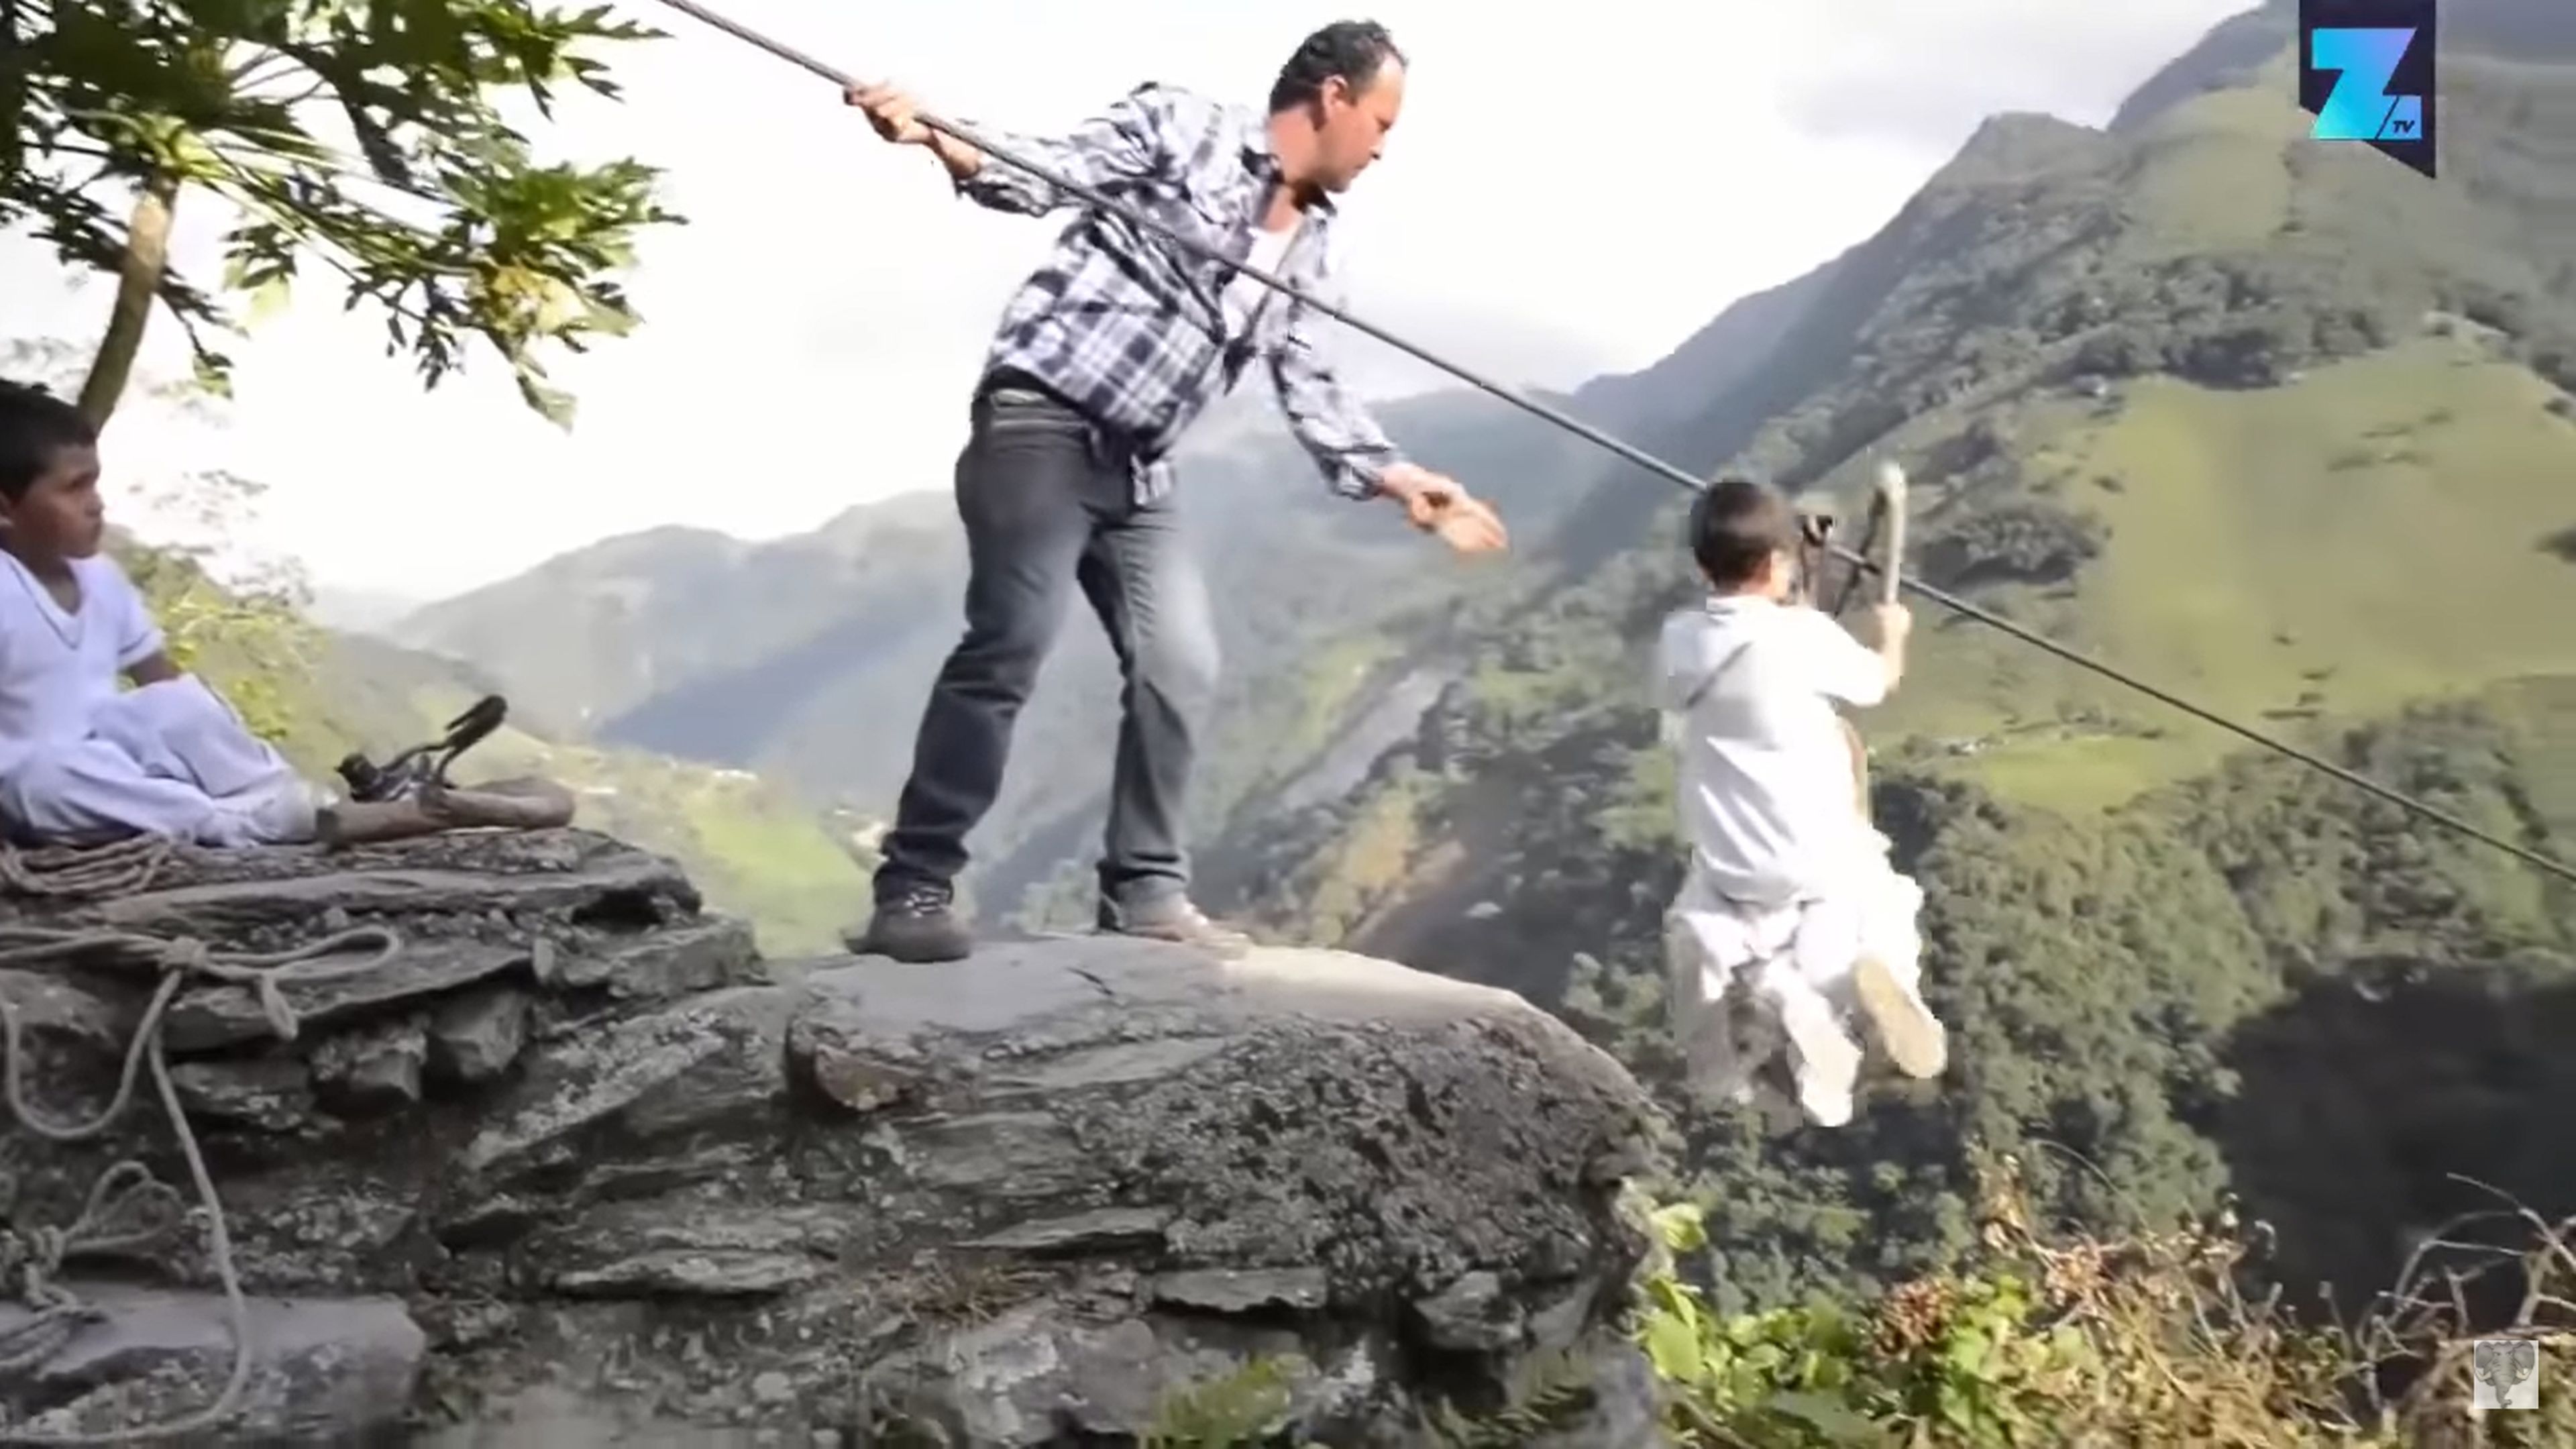 En Colombia los niños tienen que cruzar un barranco de 200 metros de altura colgados de un cable para ir a la escuela